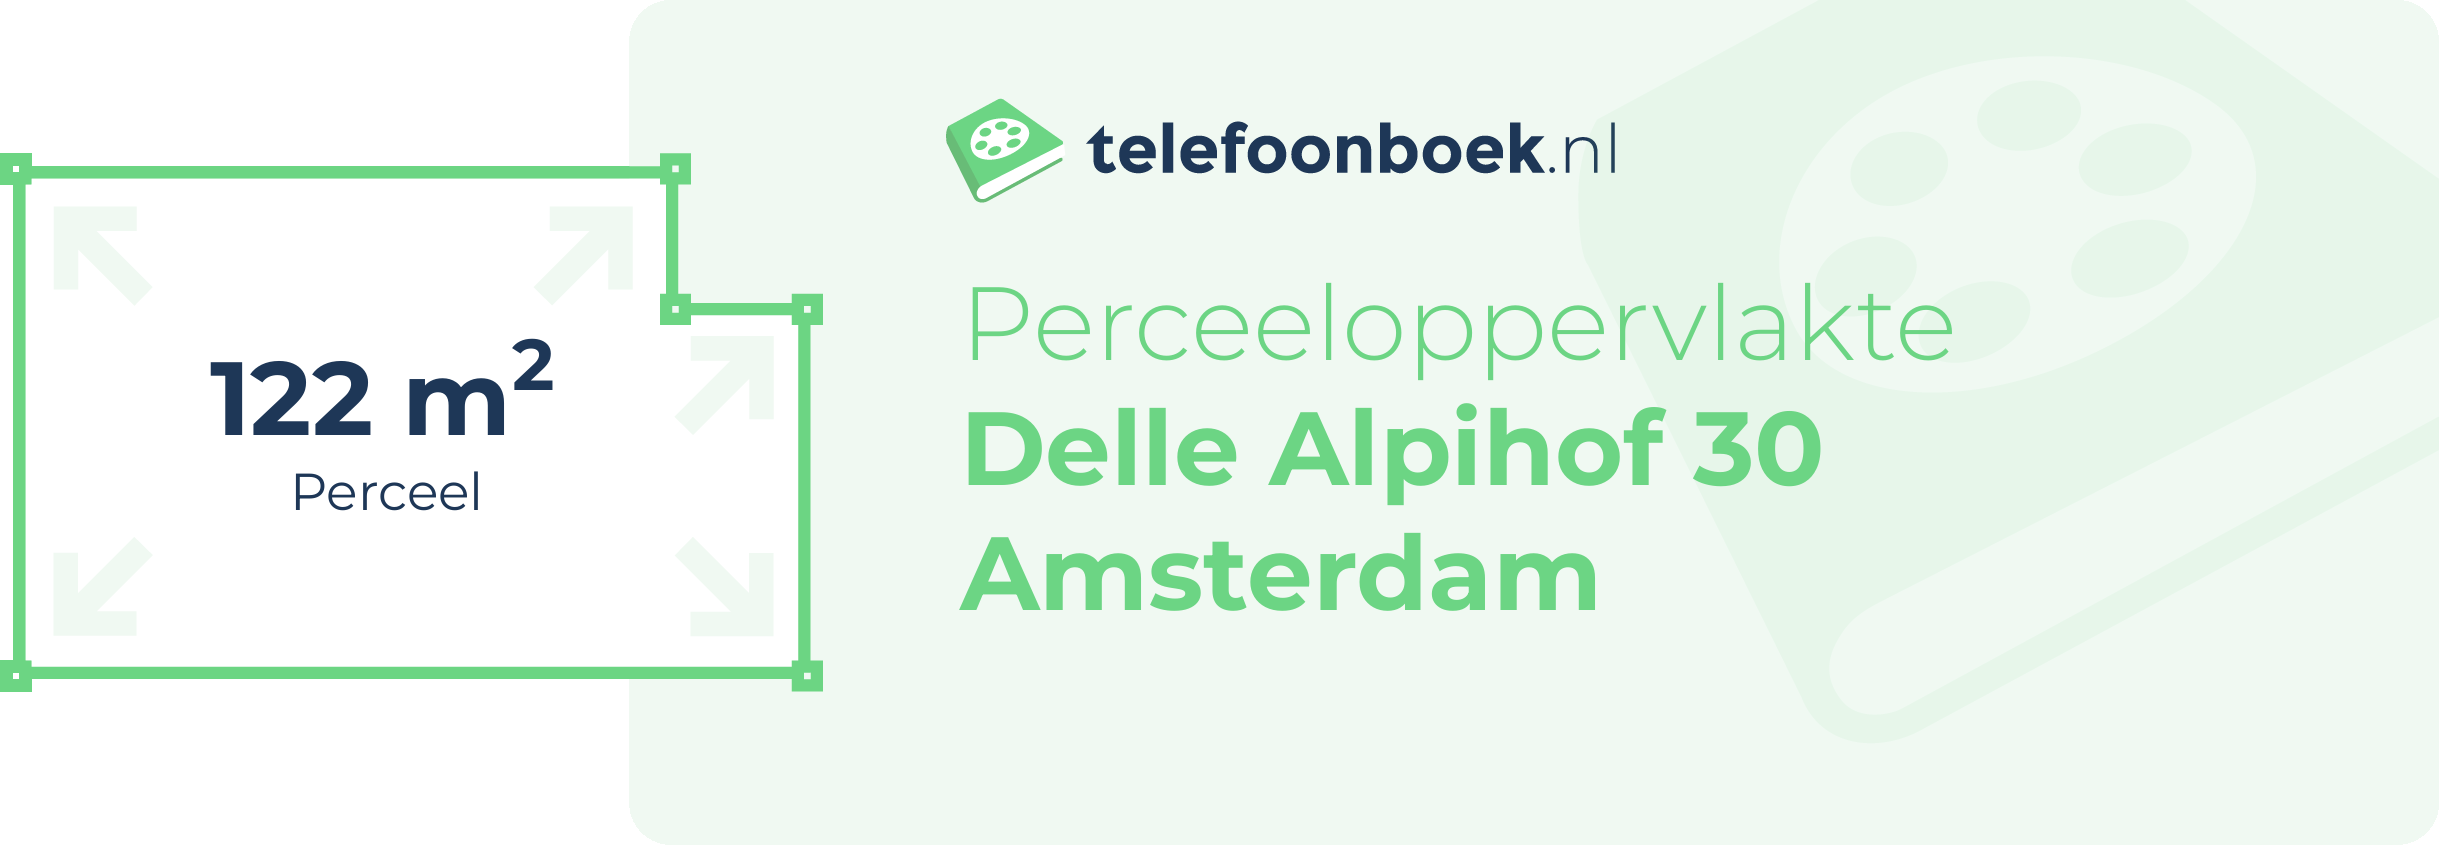 Perceeloppervlakte Delle Alpihof 30 Amsterdam